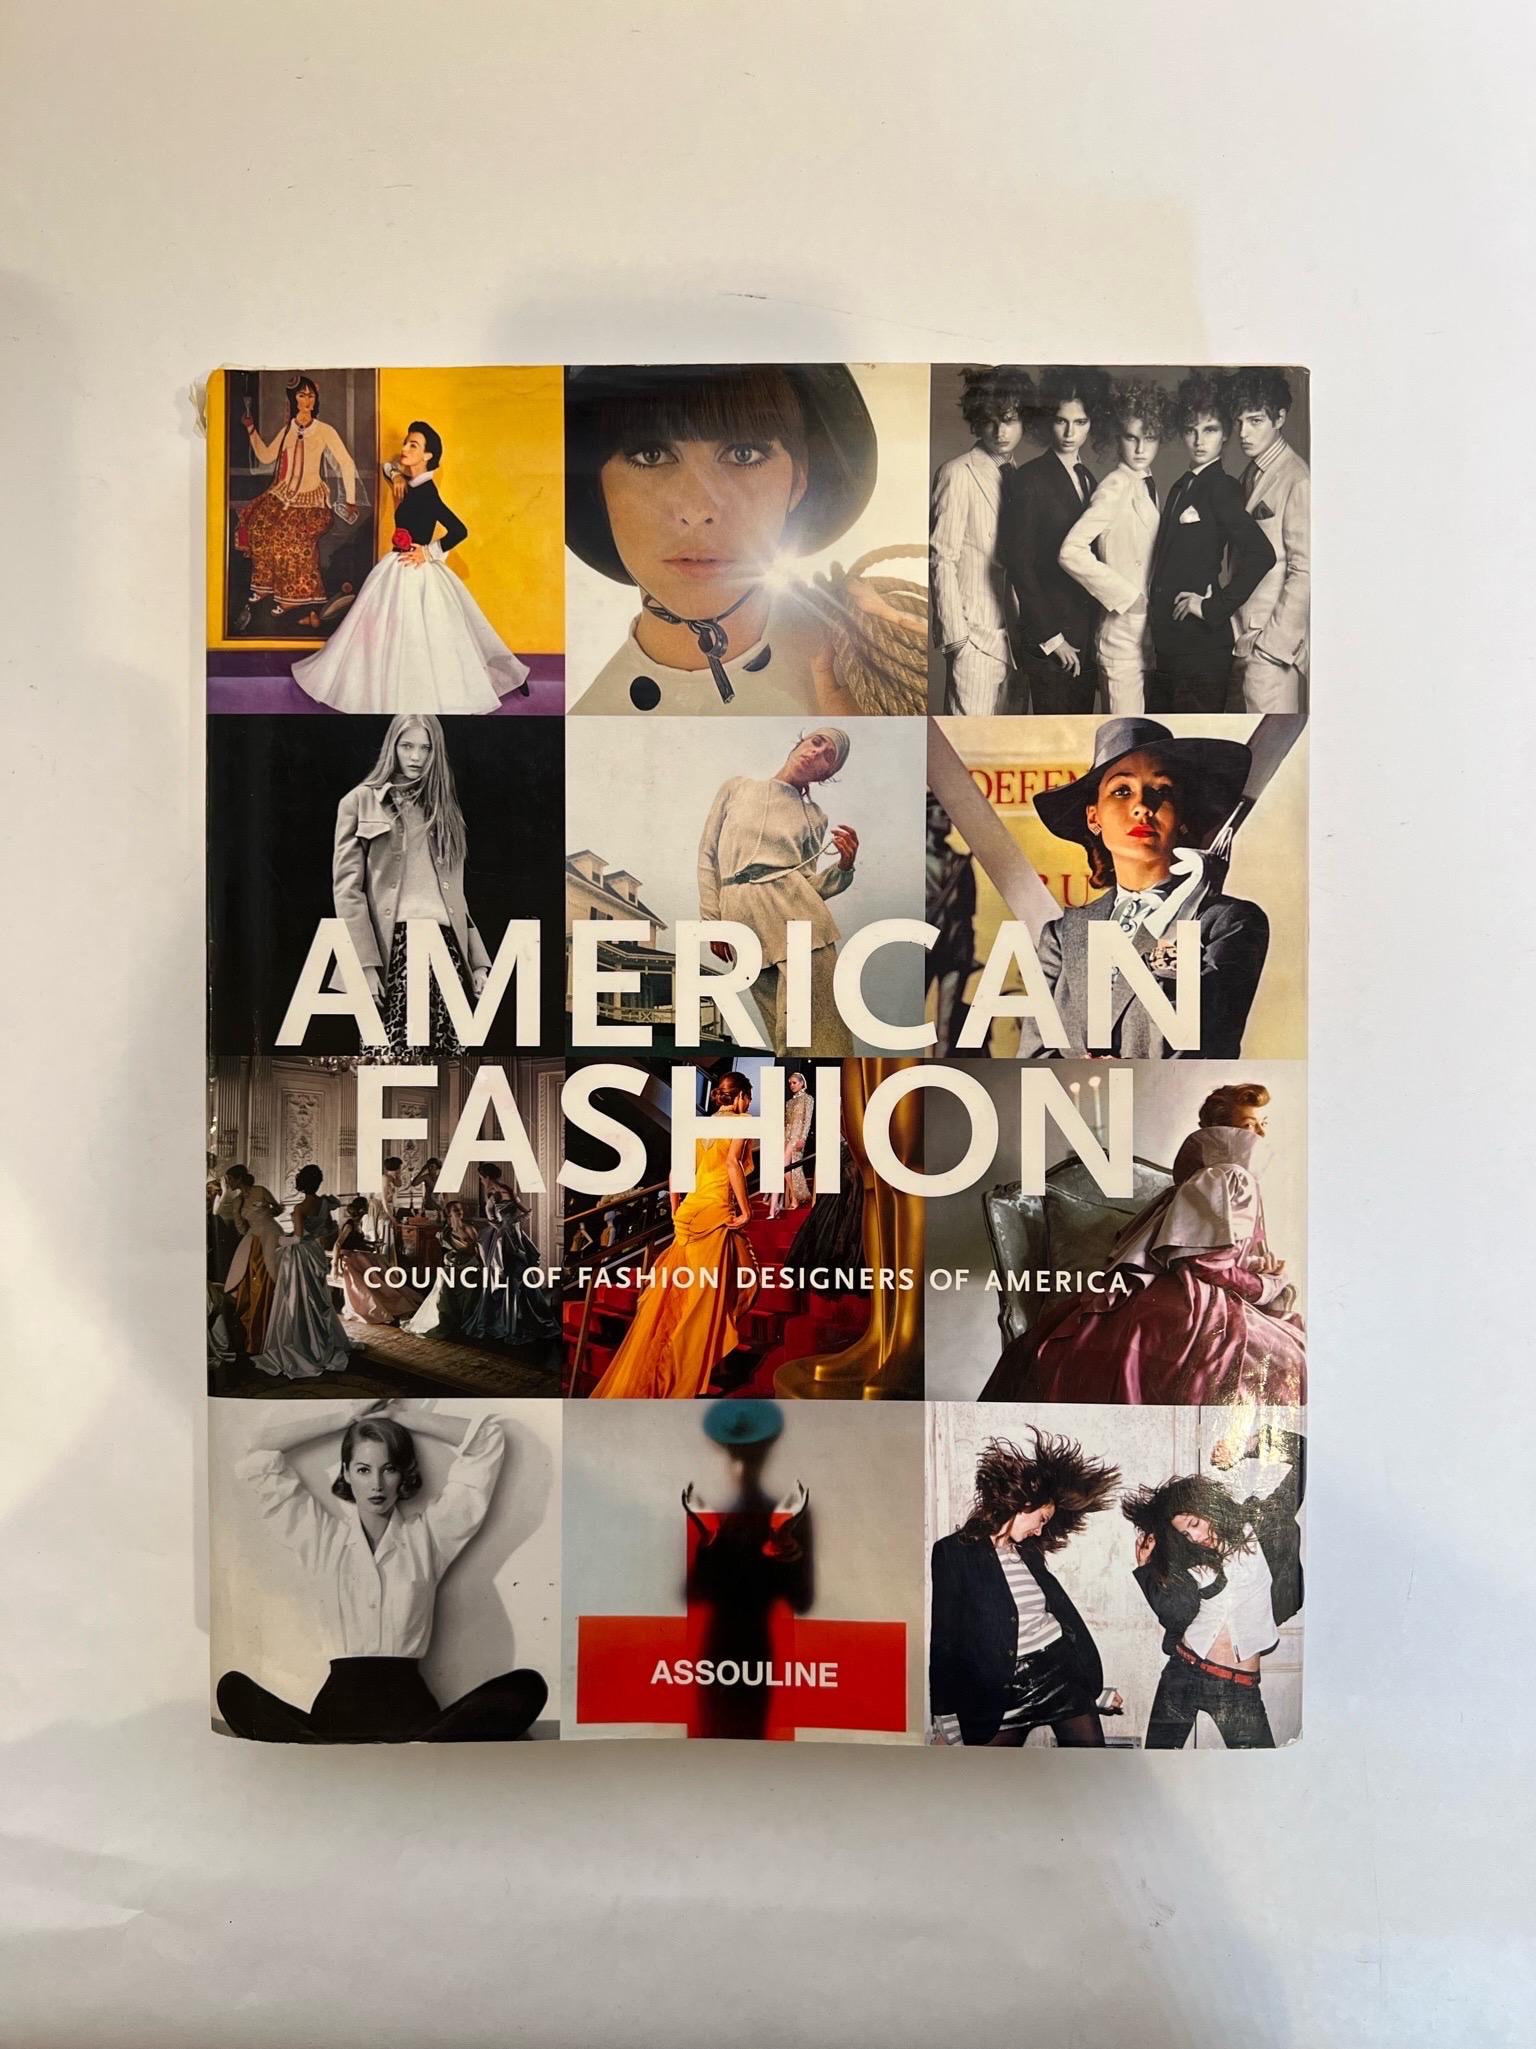 American Fashion Hardcover Coffee Table Book Assouline 2007.
American Fashion von ASSOULINE, veröffentlicht im Jahr 2007, ist ein umfassender und wunderschön illustrierter Überblick über die Geschichte der Mode in den Vereinigten